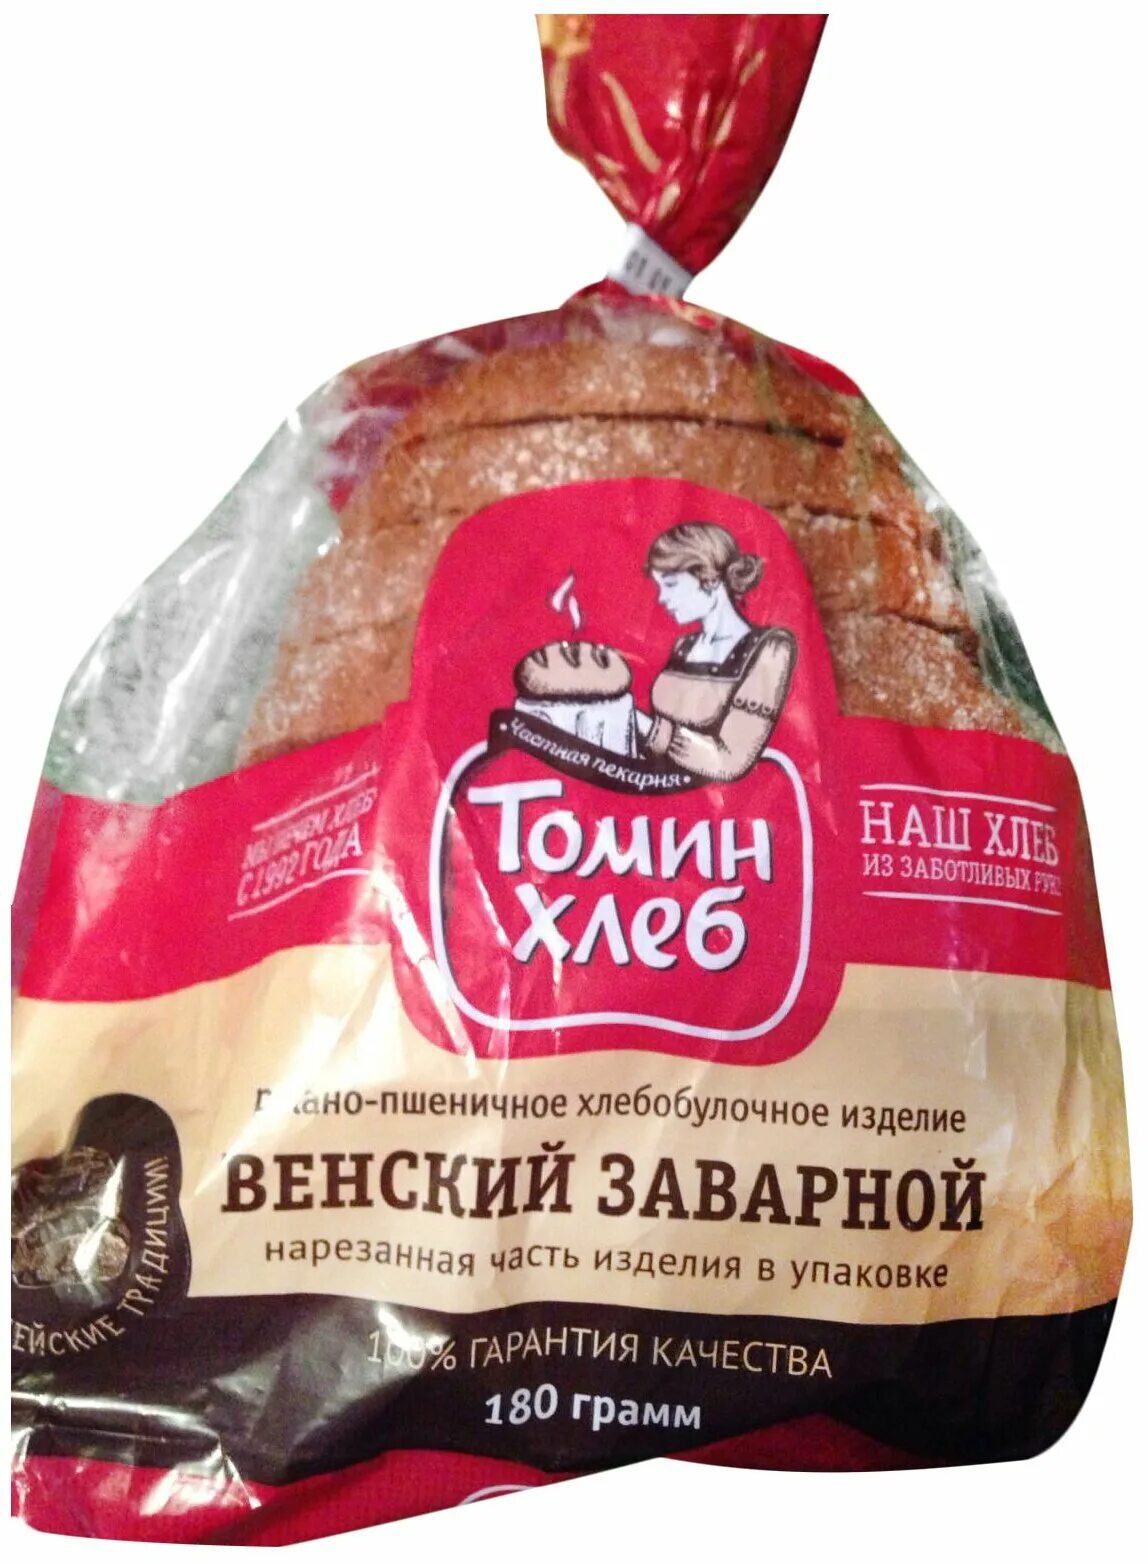 Венский заварной хлеб. Томин хлеб. Томин хлеб хлеб. Венский хлеб Томин. Пшеничный заварной